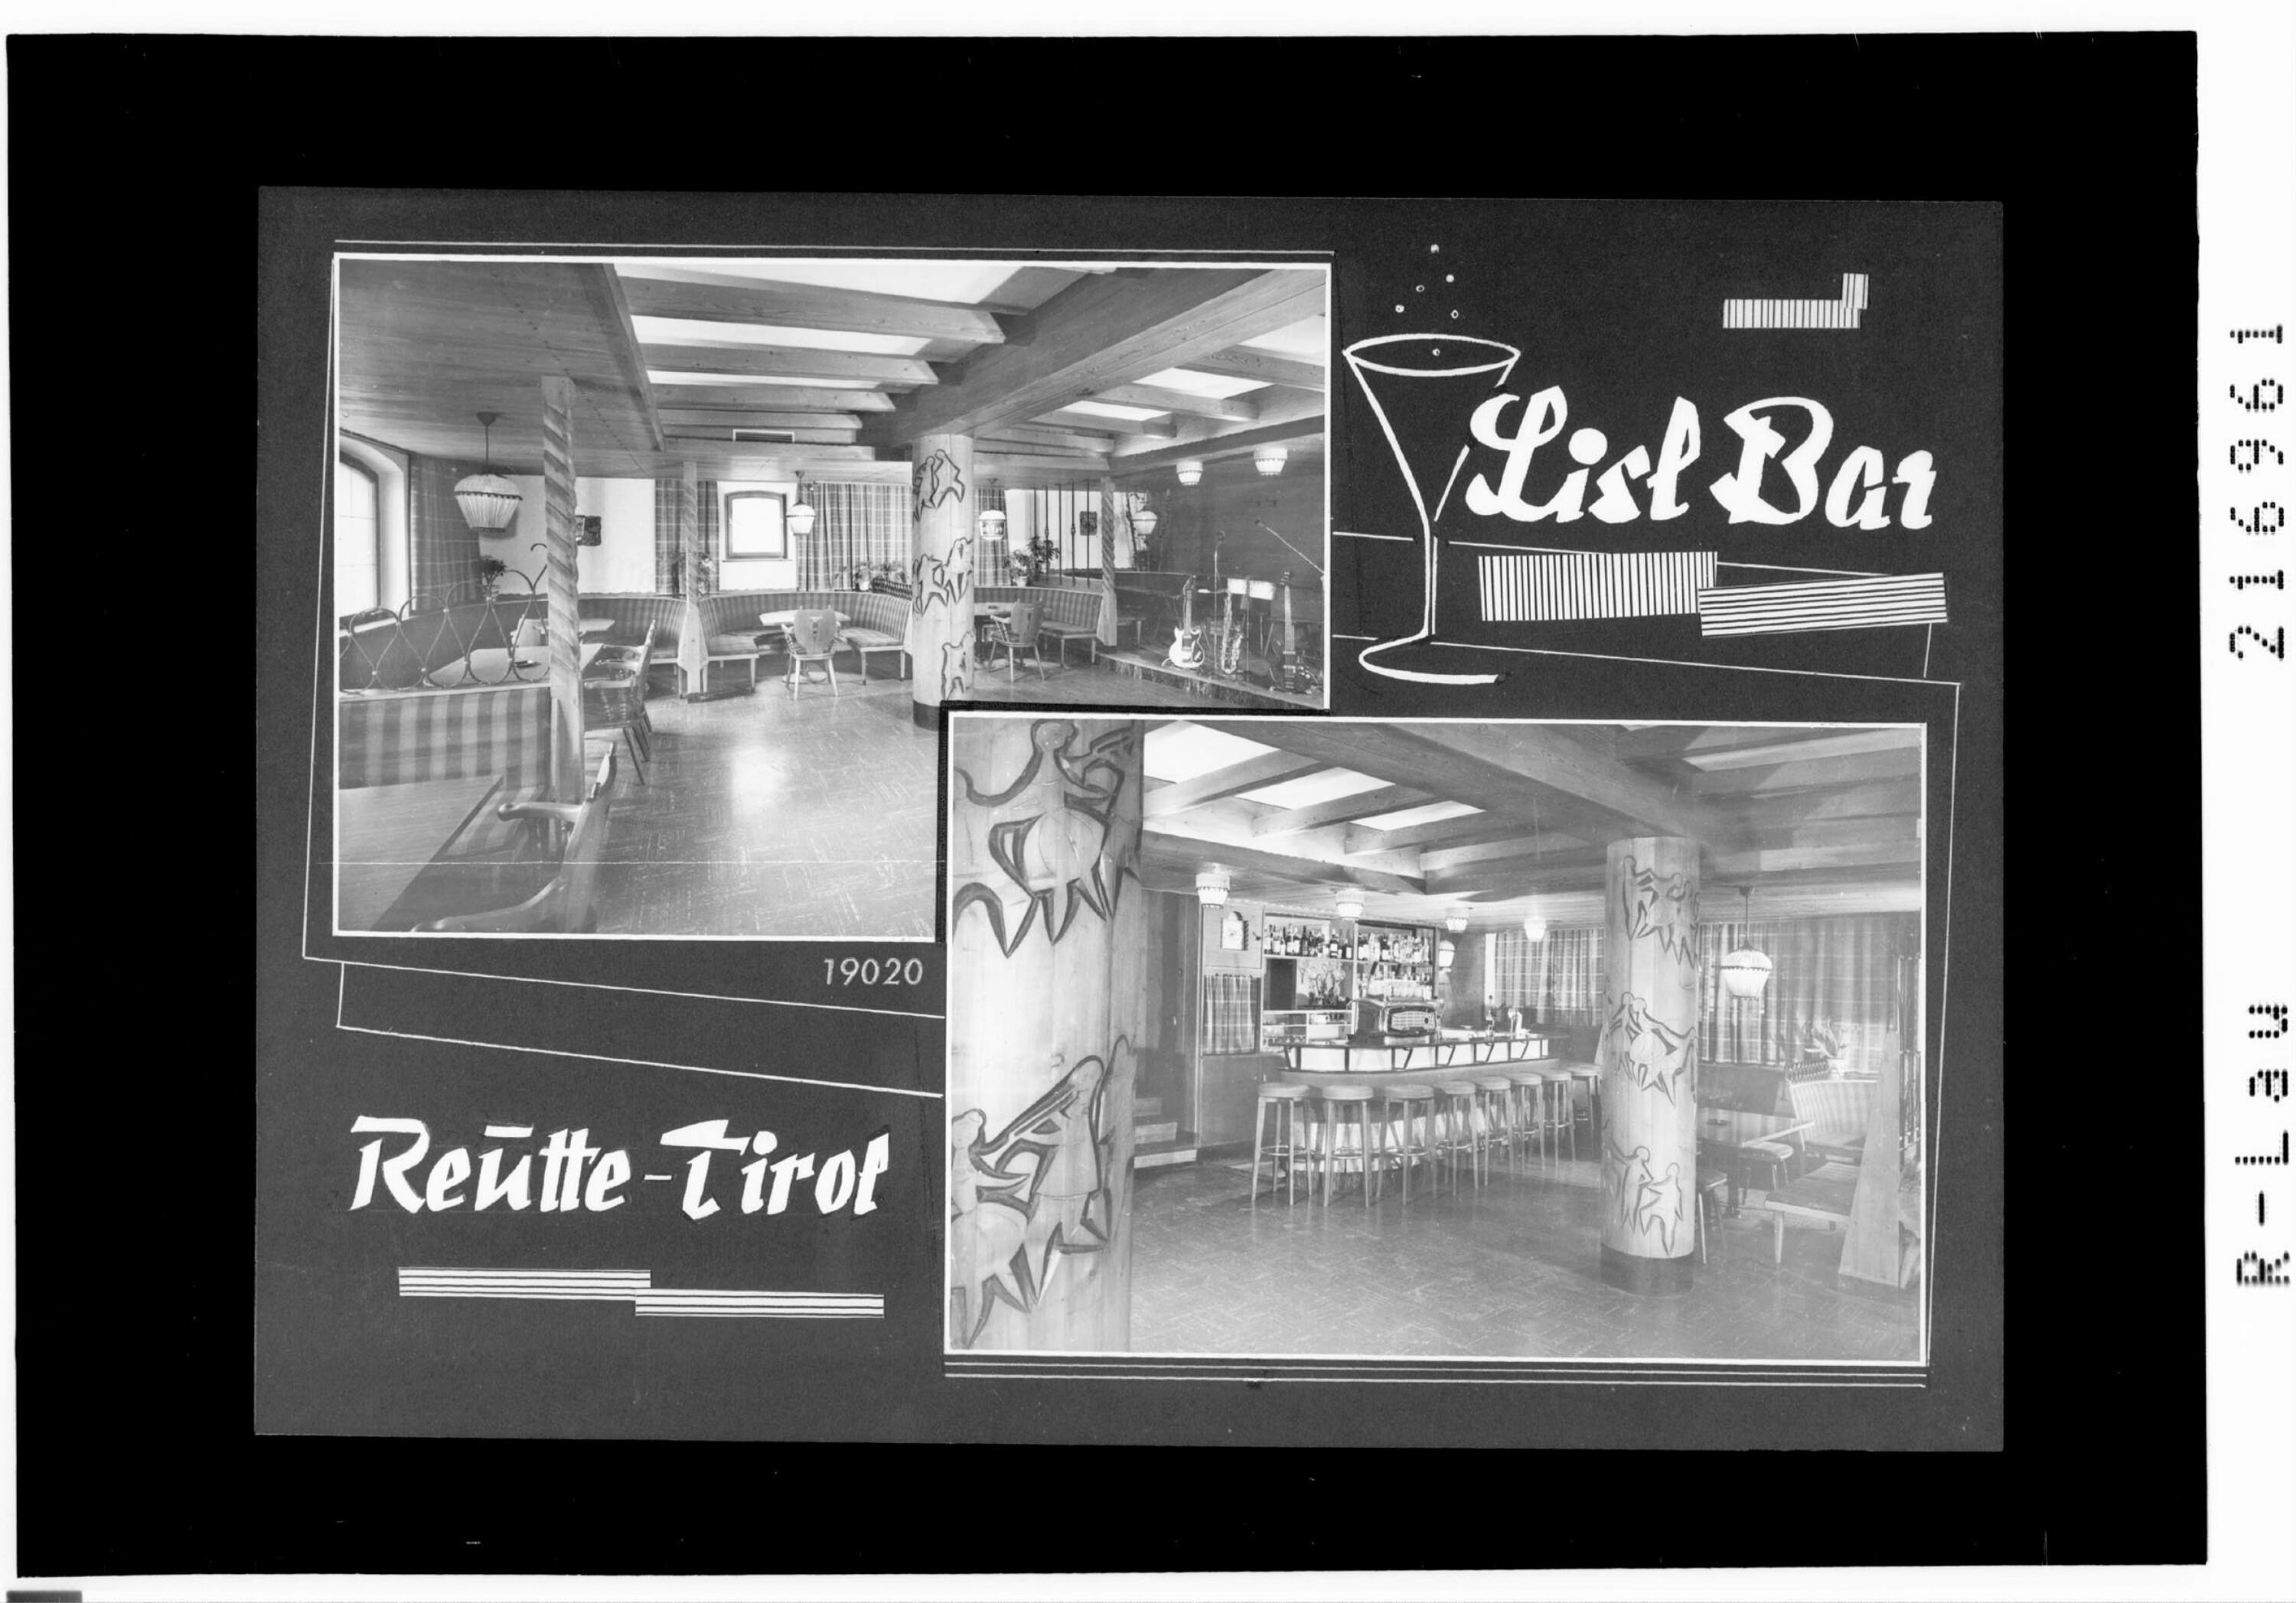 Lisl Bar Reutte - Tirol></div>


    <hr>
    <div class=